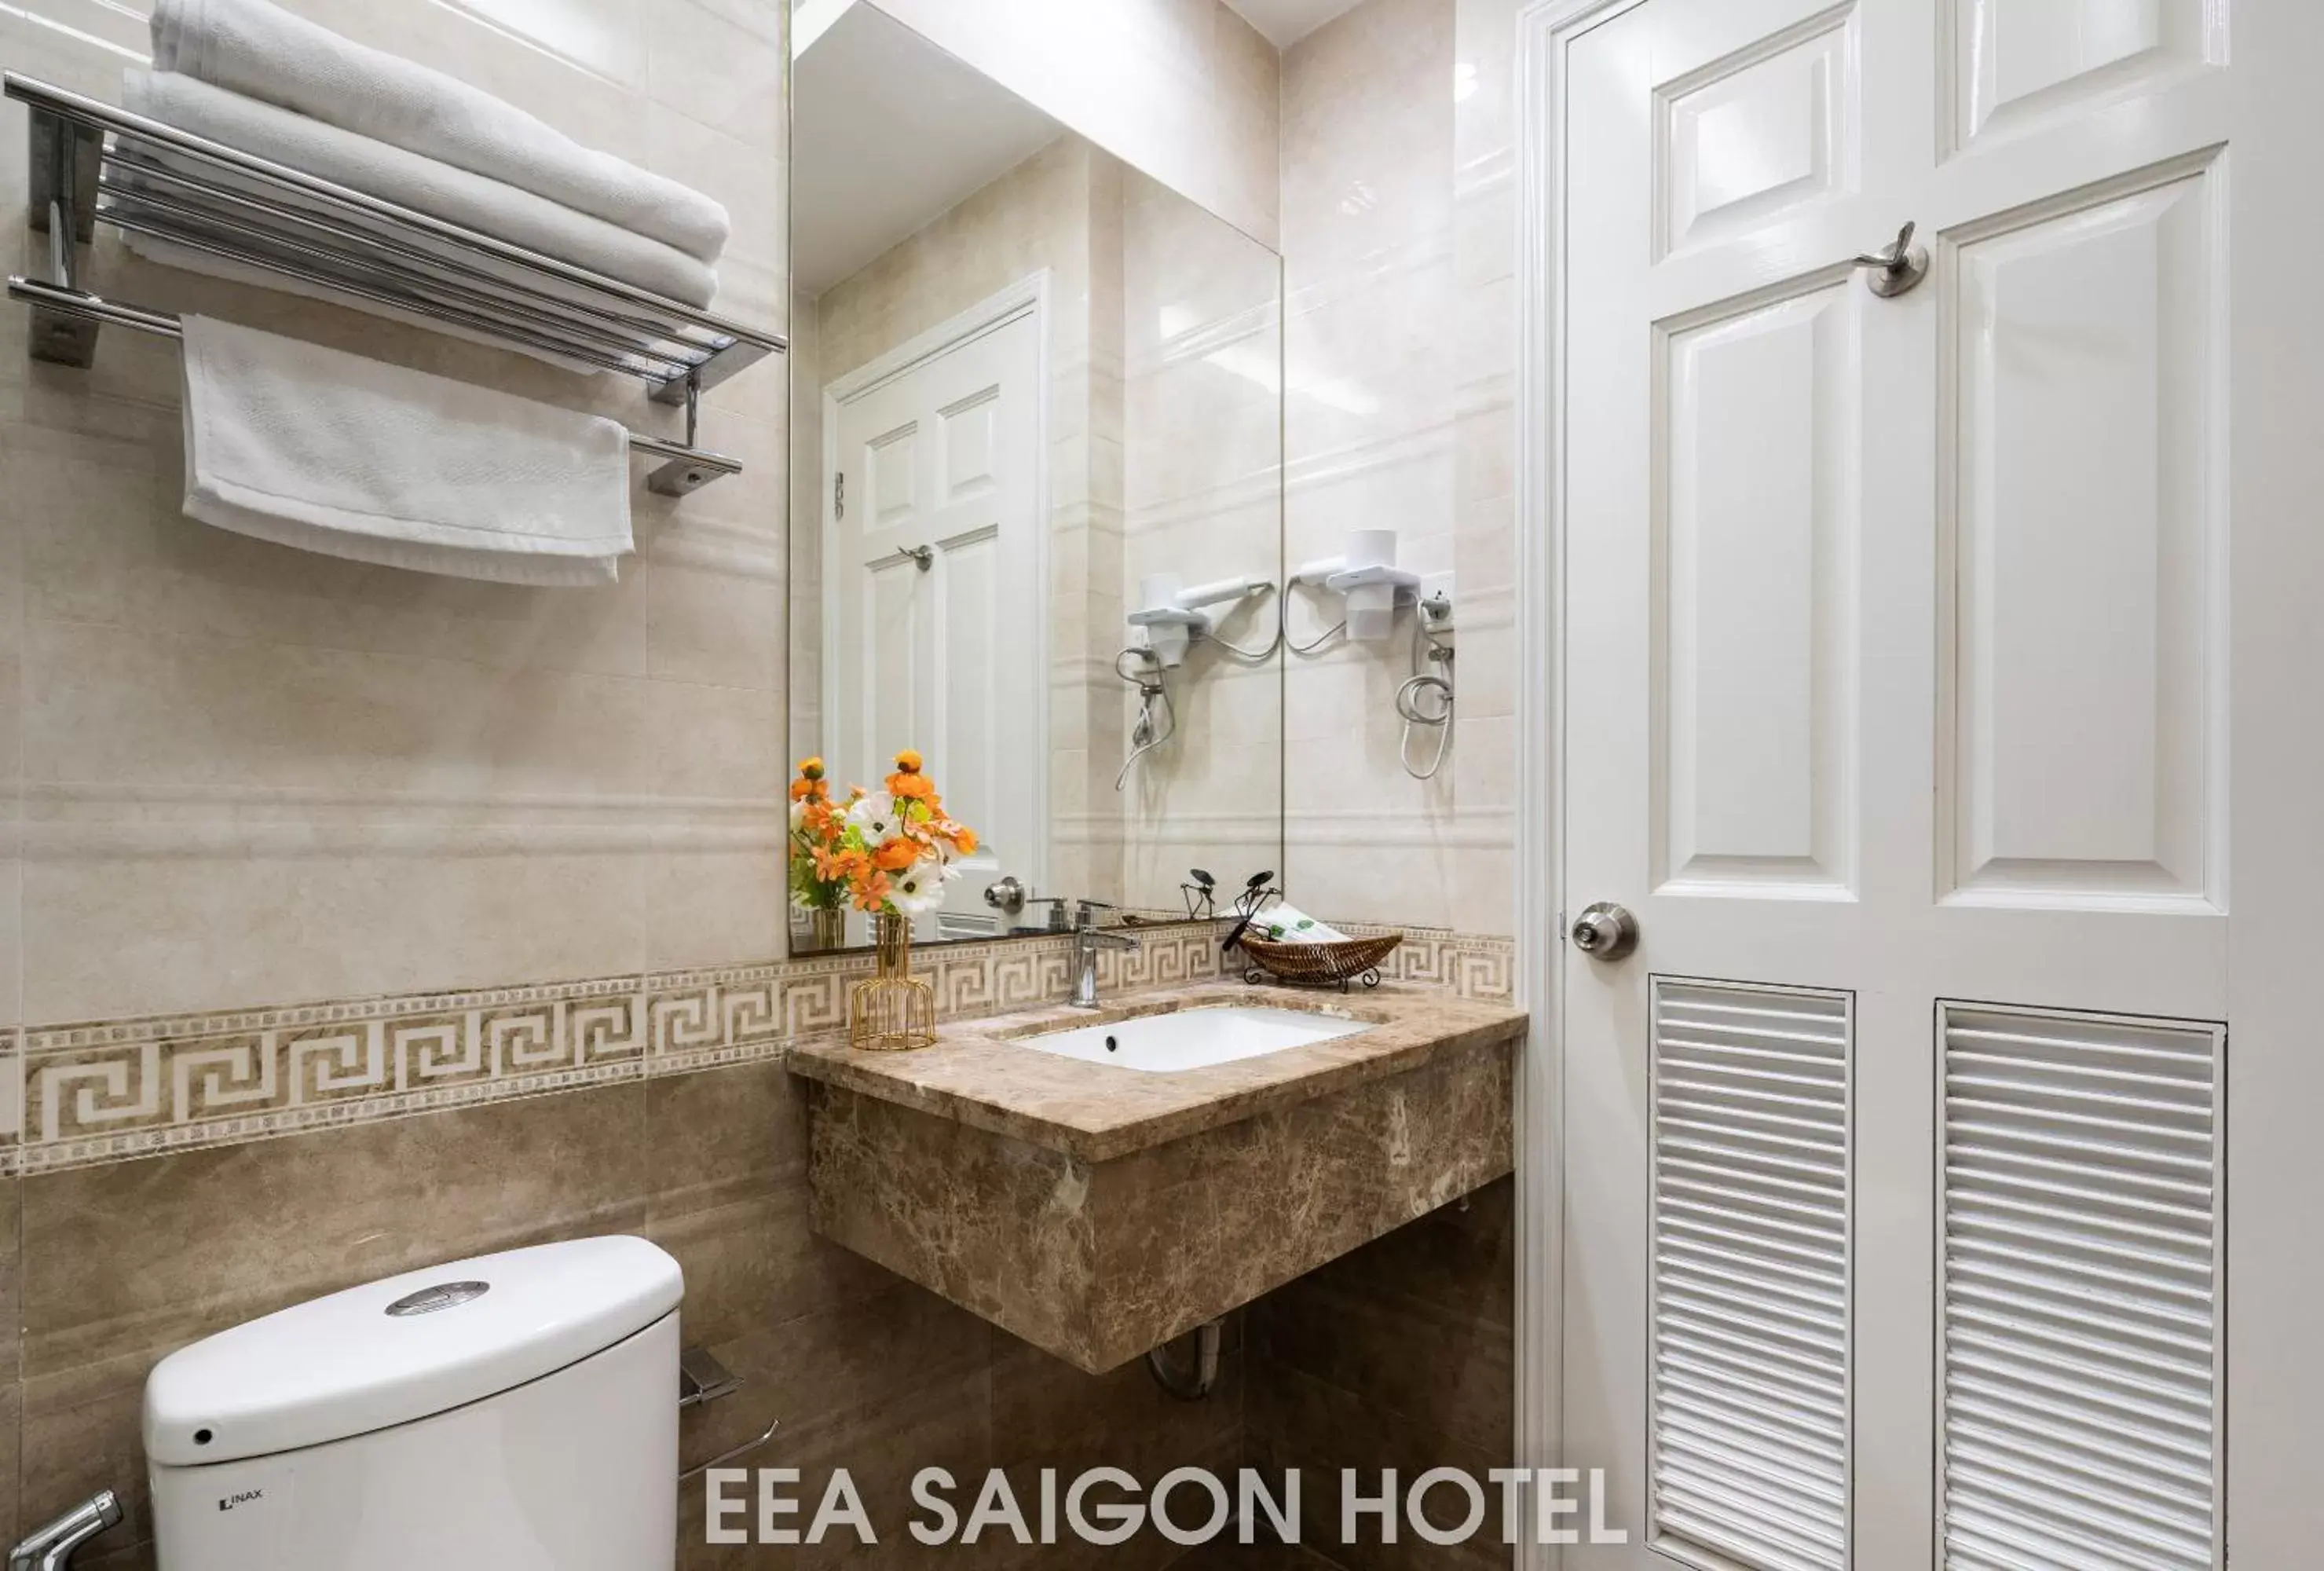 Toilet, Bathroom in EEA Central Saigon Hotel